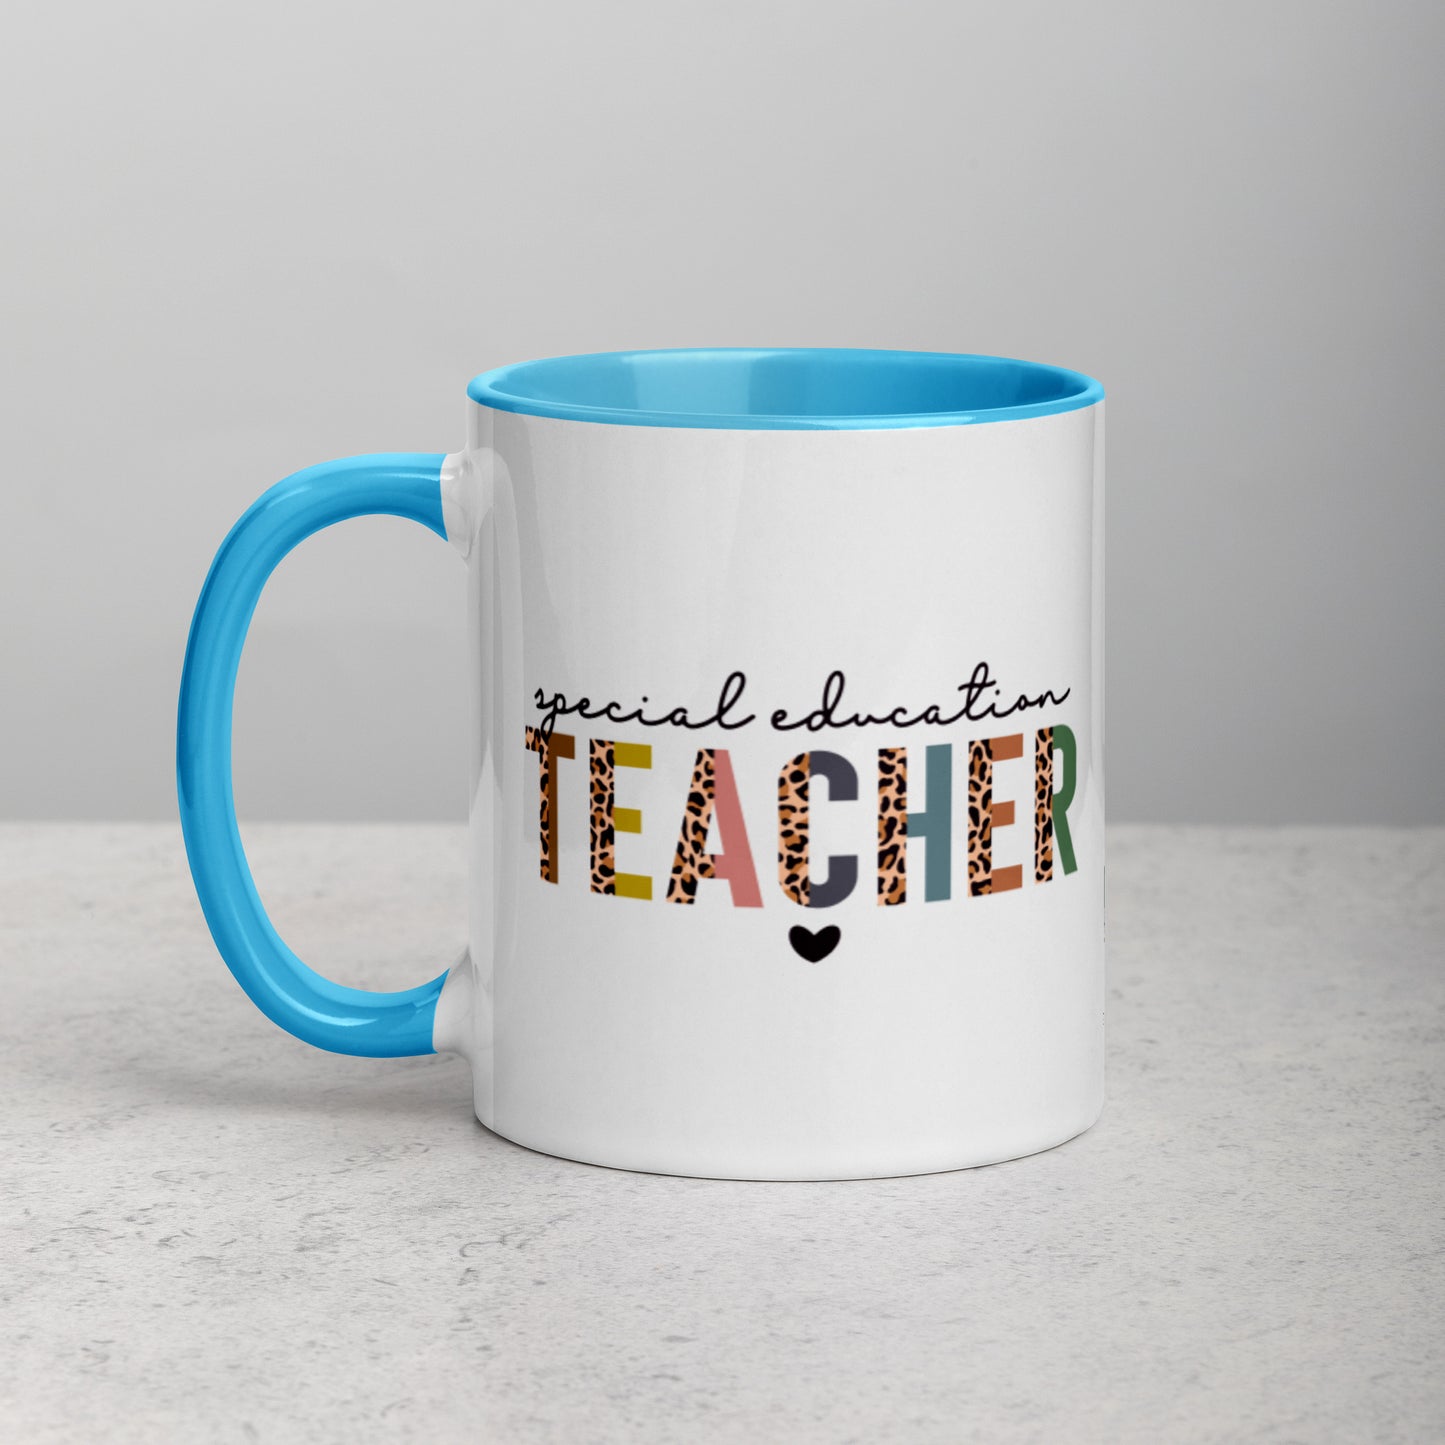 "Special Education Teacher" Mug with Color Inside, 11oz